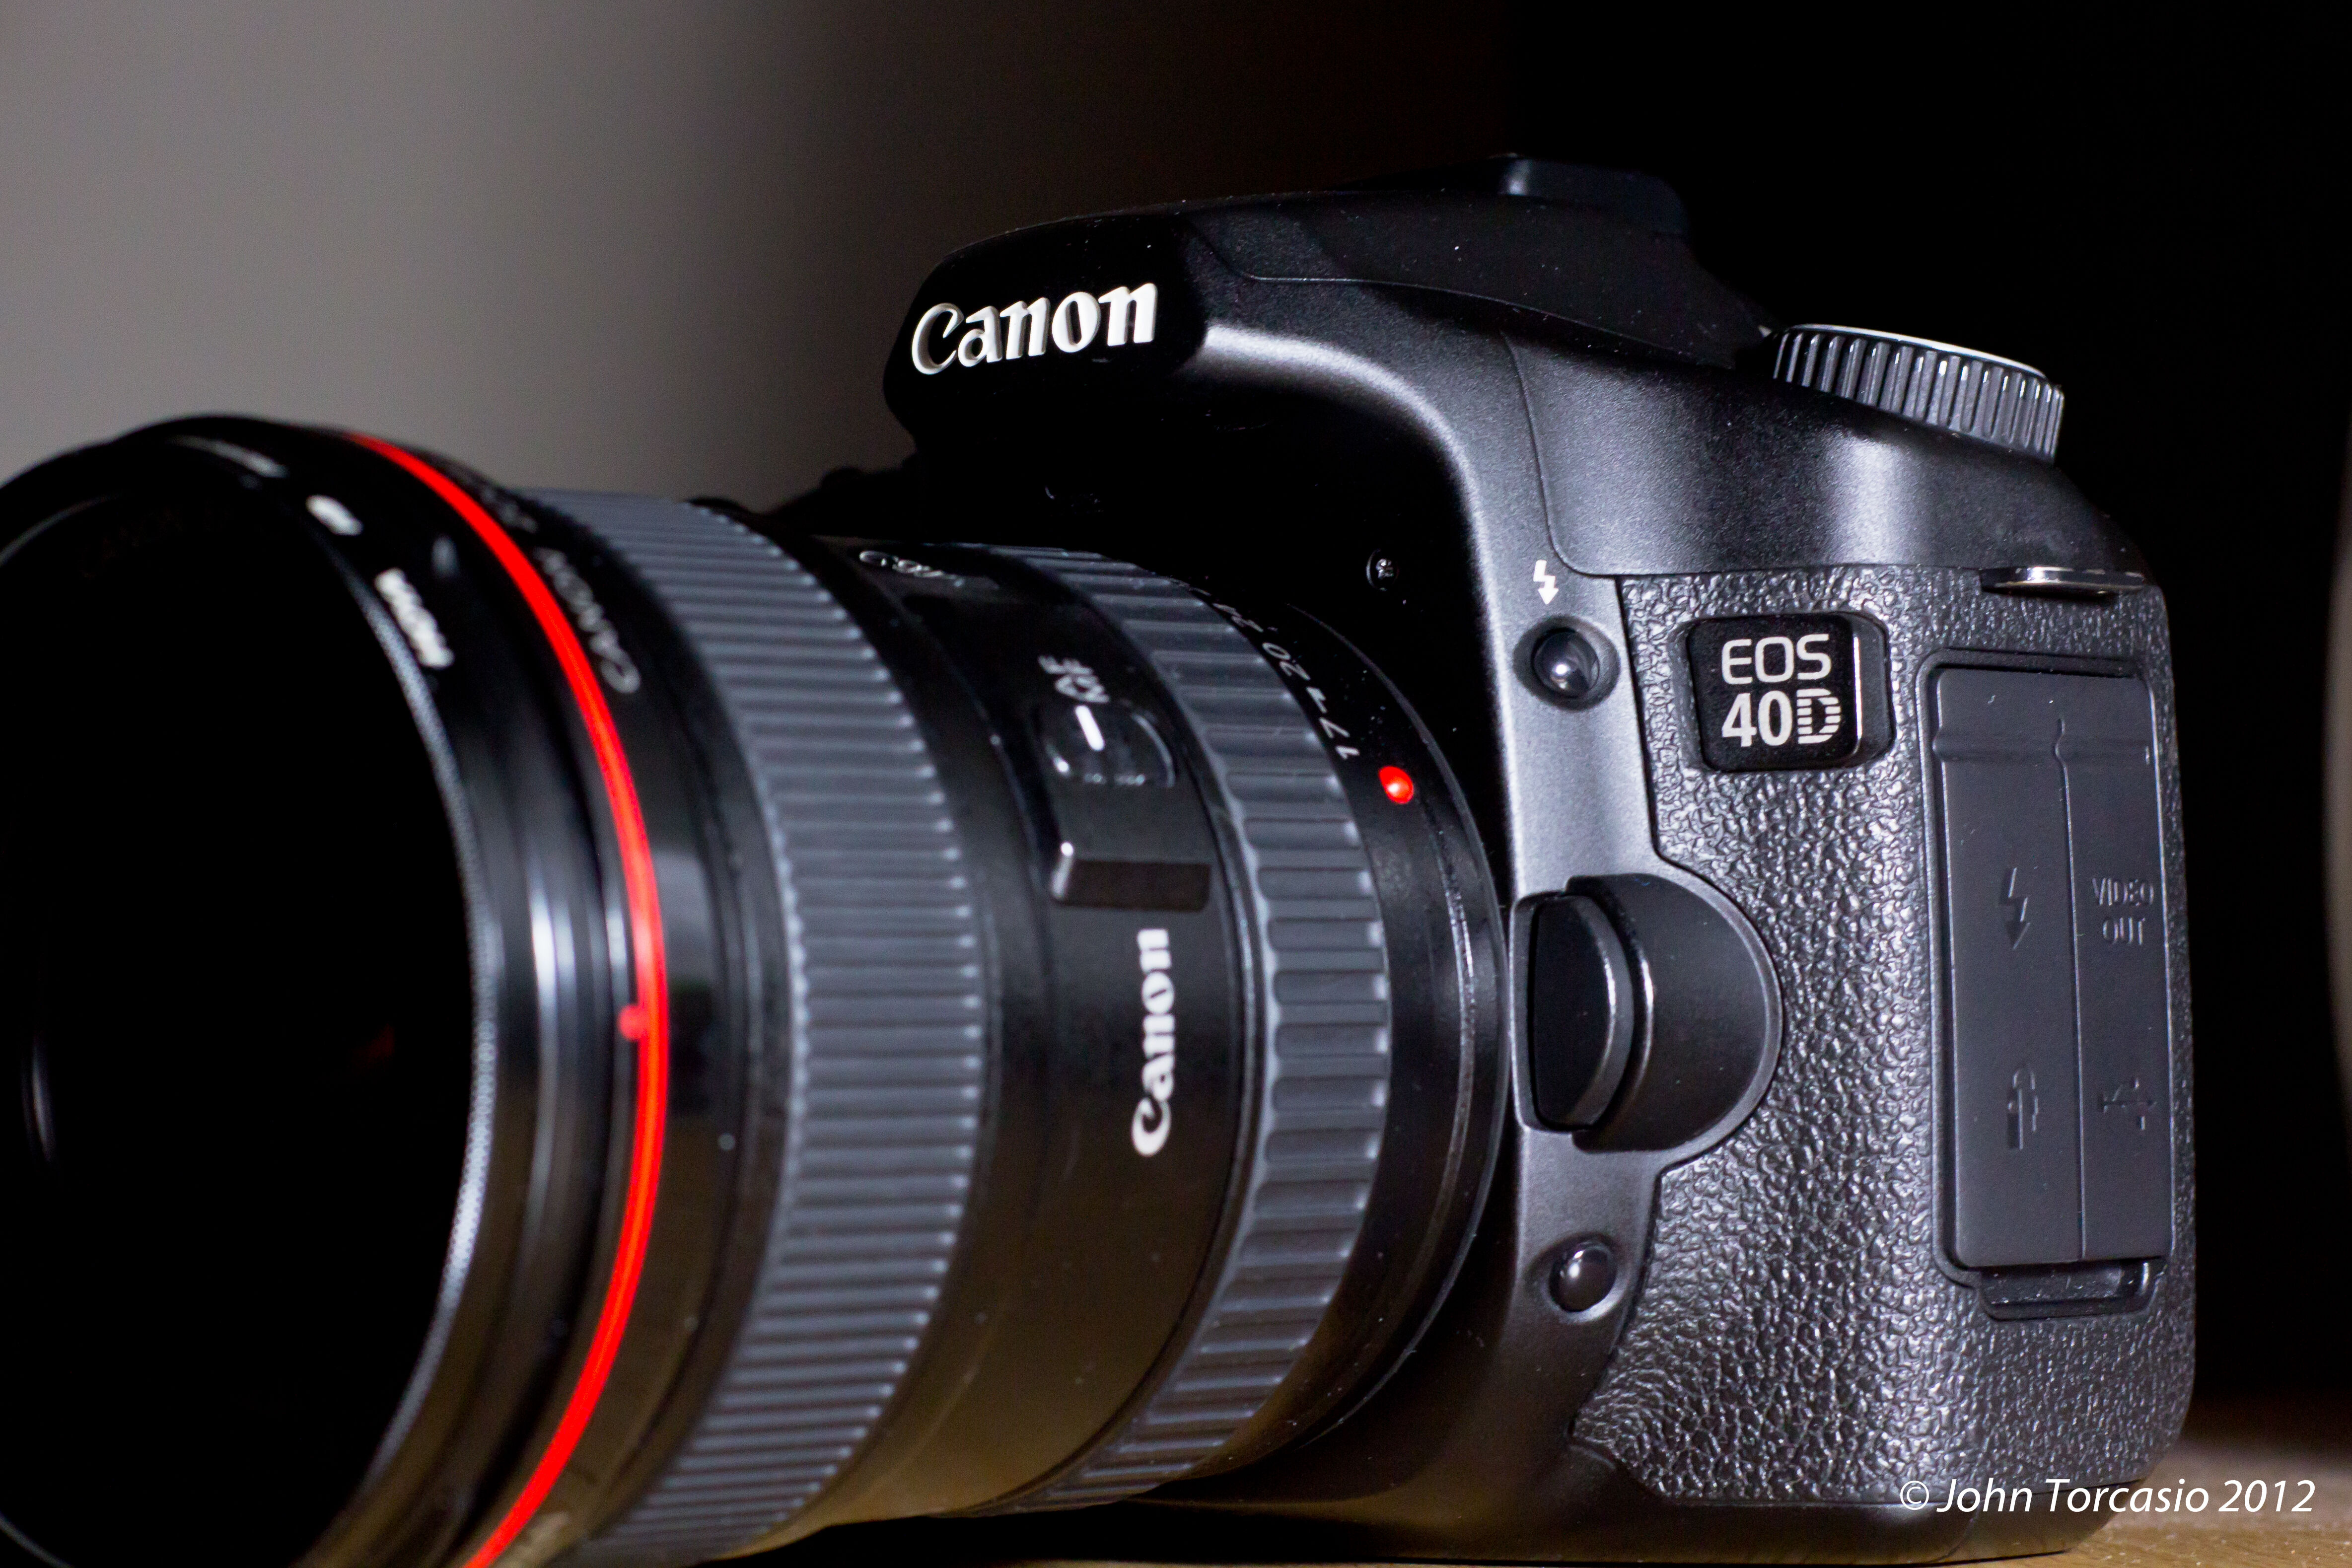 Canon EOS 40D, Camerapedia